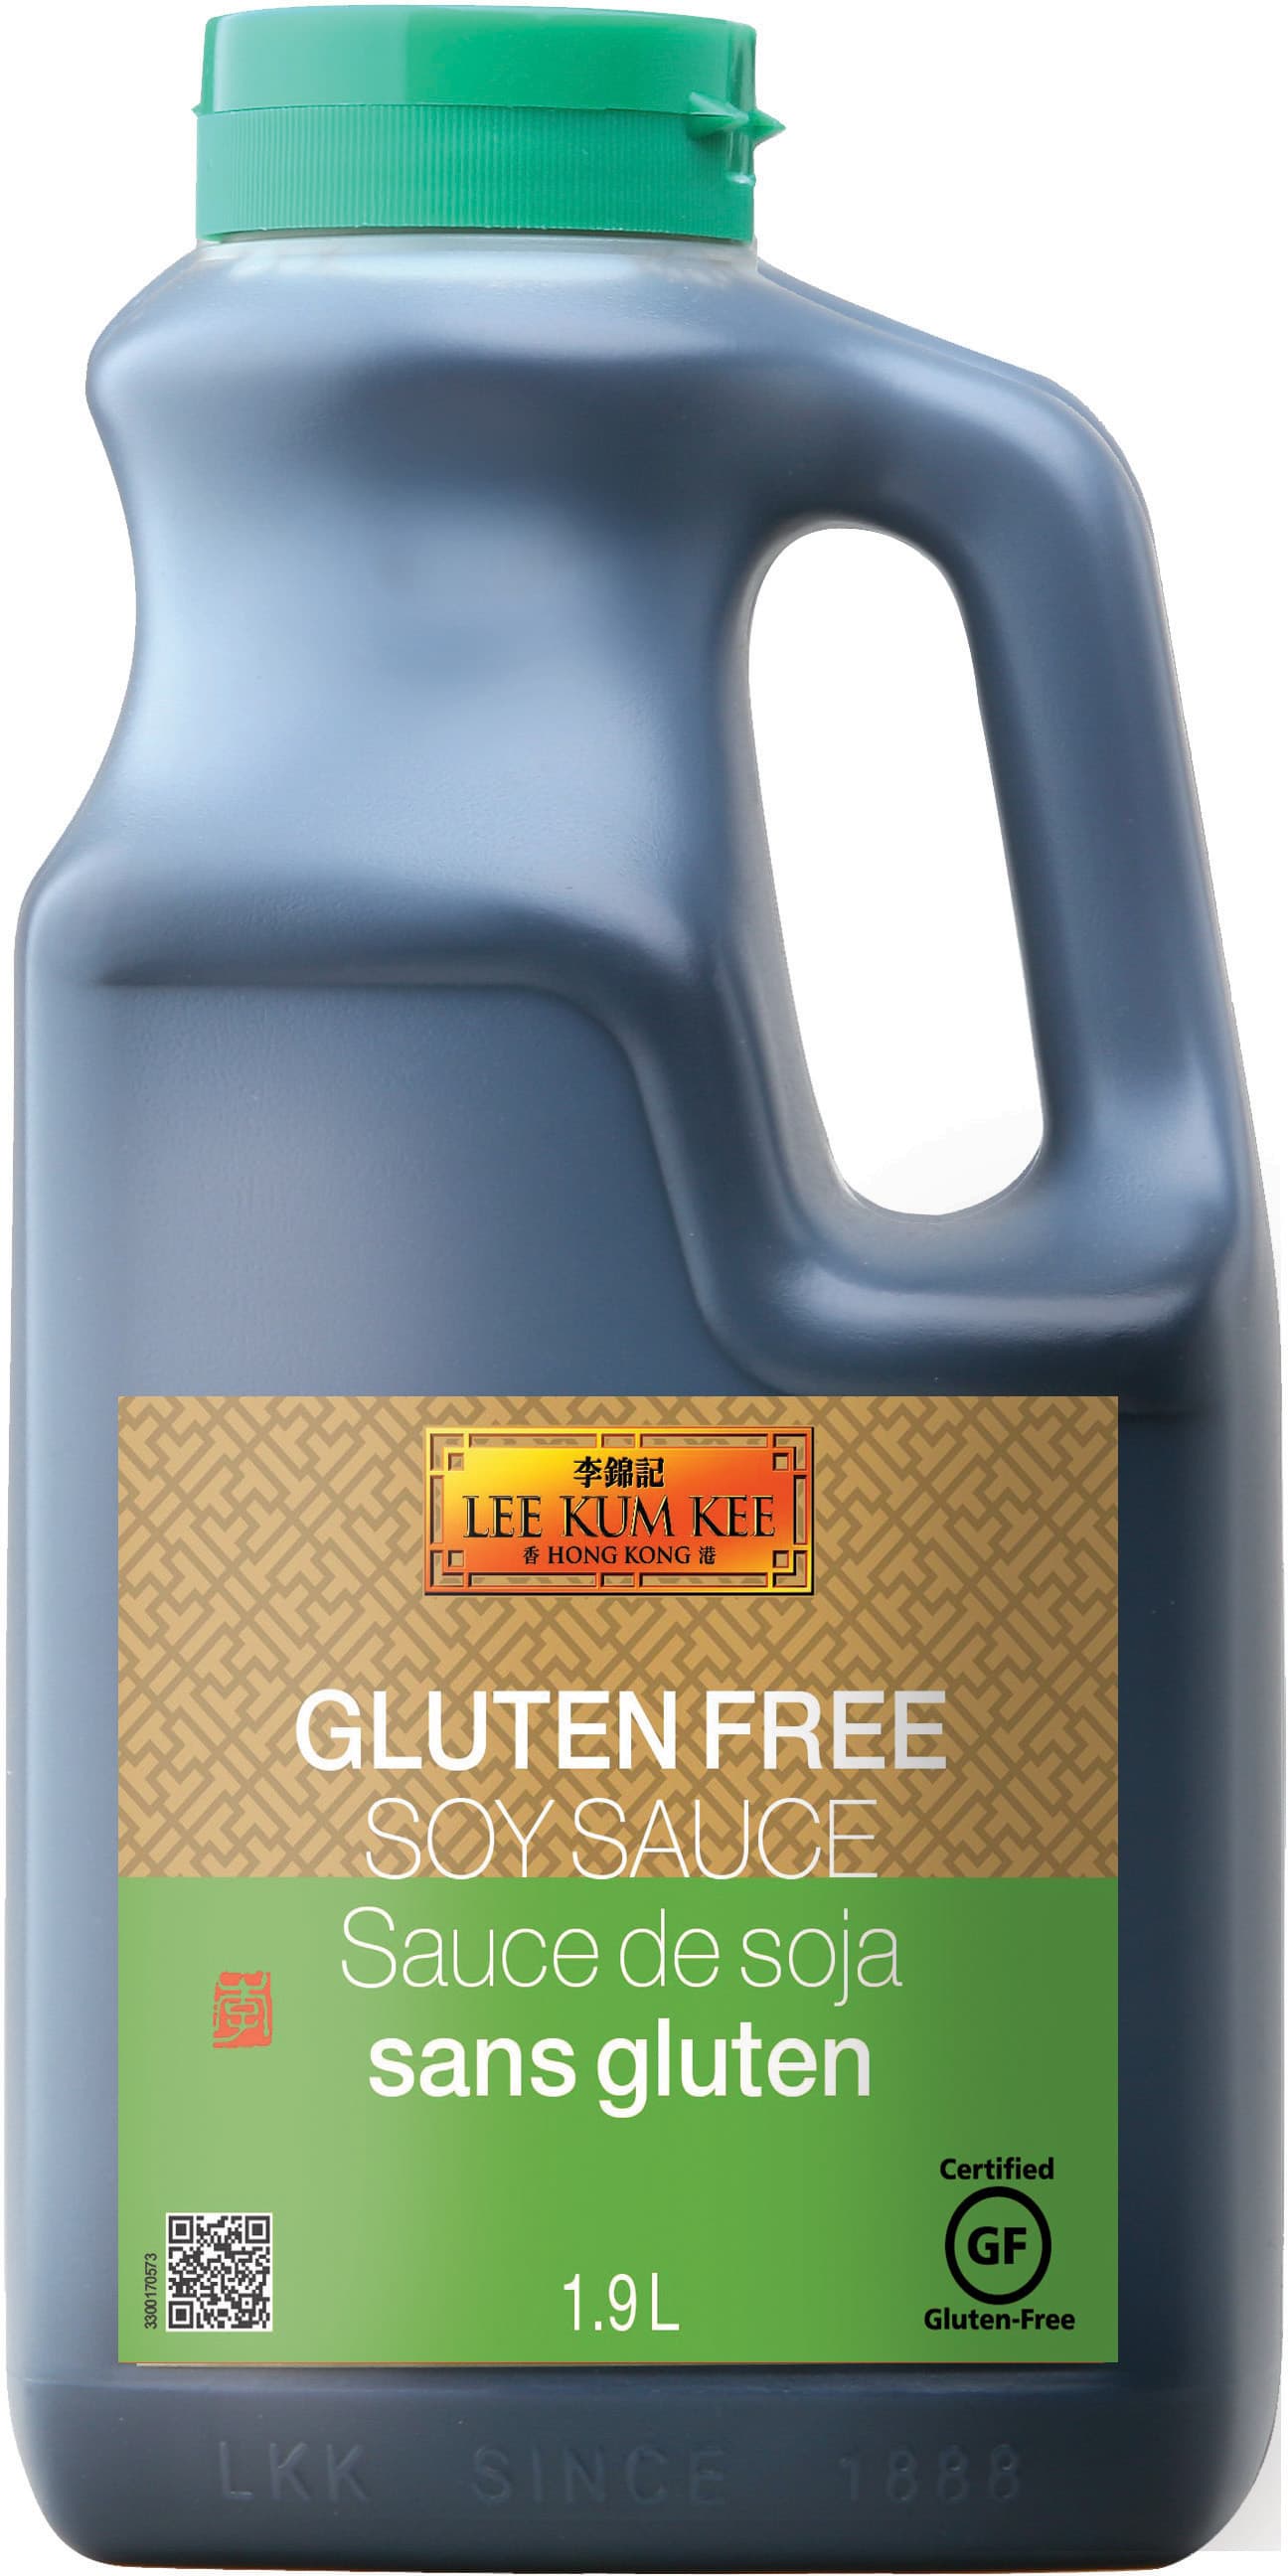 Gluten Free Soy Sauce 1.9L 